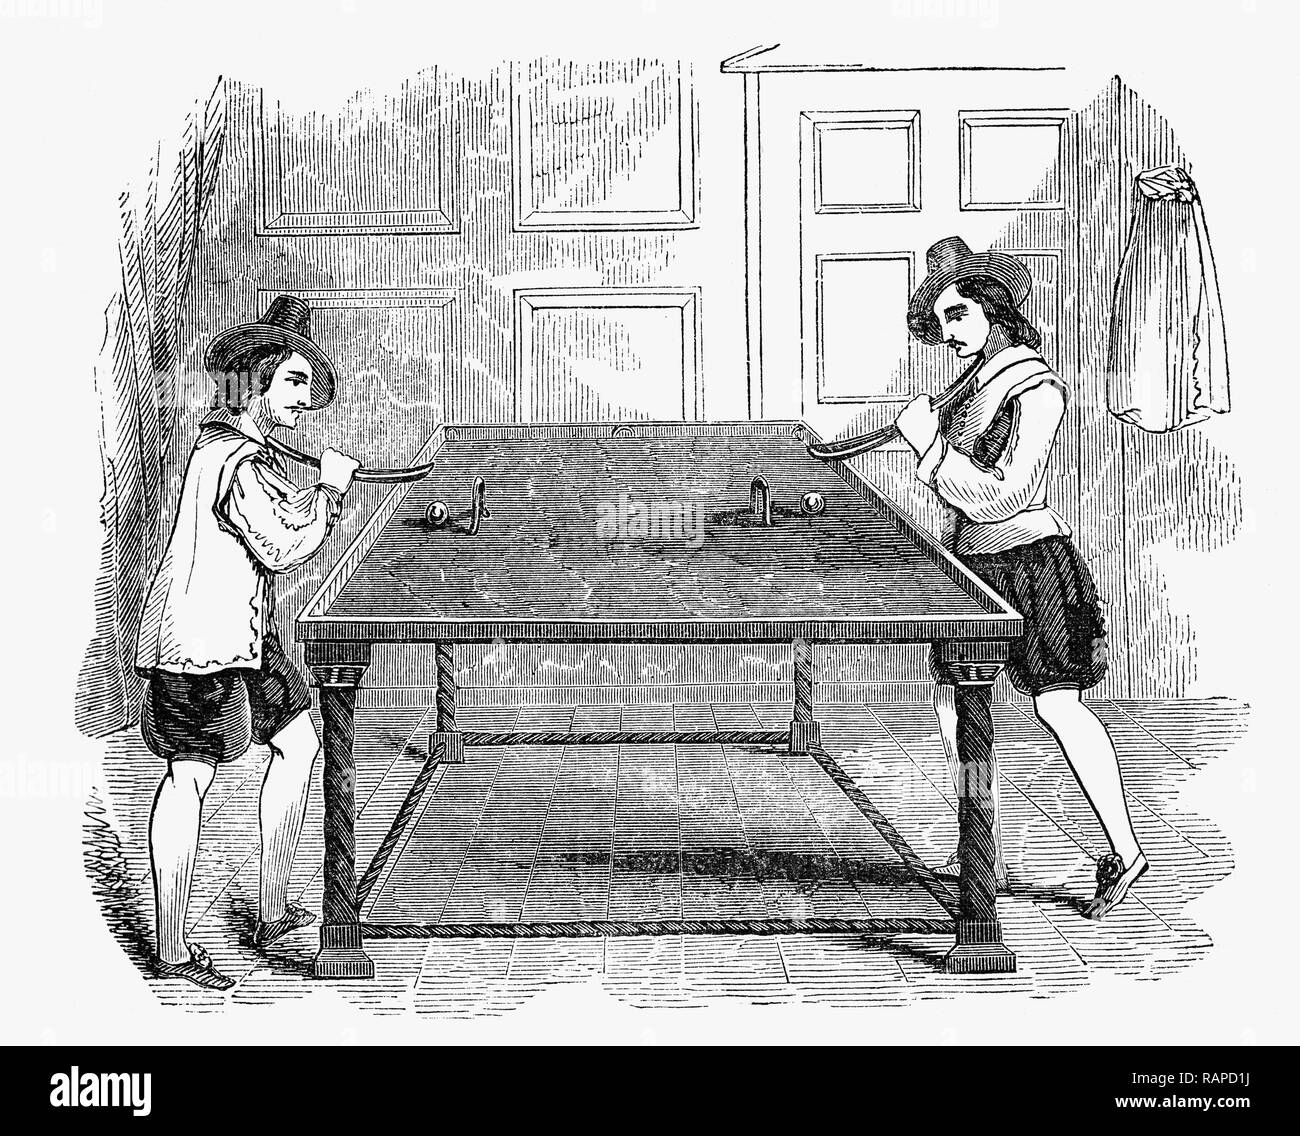 Au cours de la 17e siècle billard est devenu très populaire, tant chez les  citoyens ordinaires dans les lieux publics et parmi la noblesse qui avaient  tendance à posséder leurs propres tables